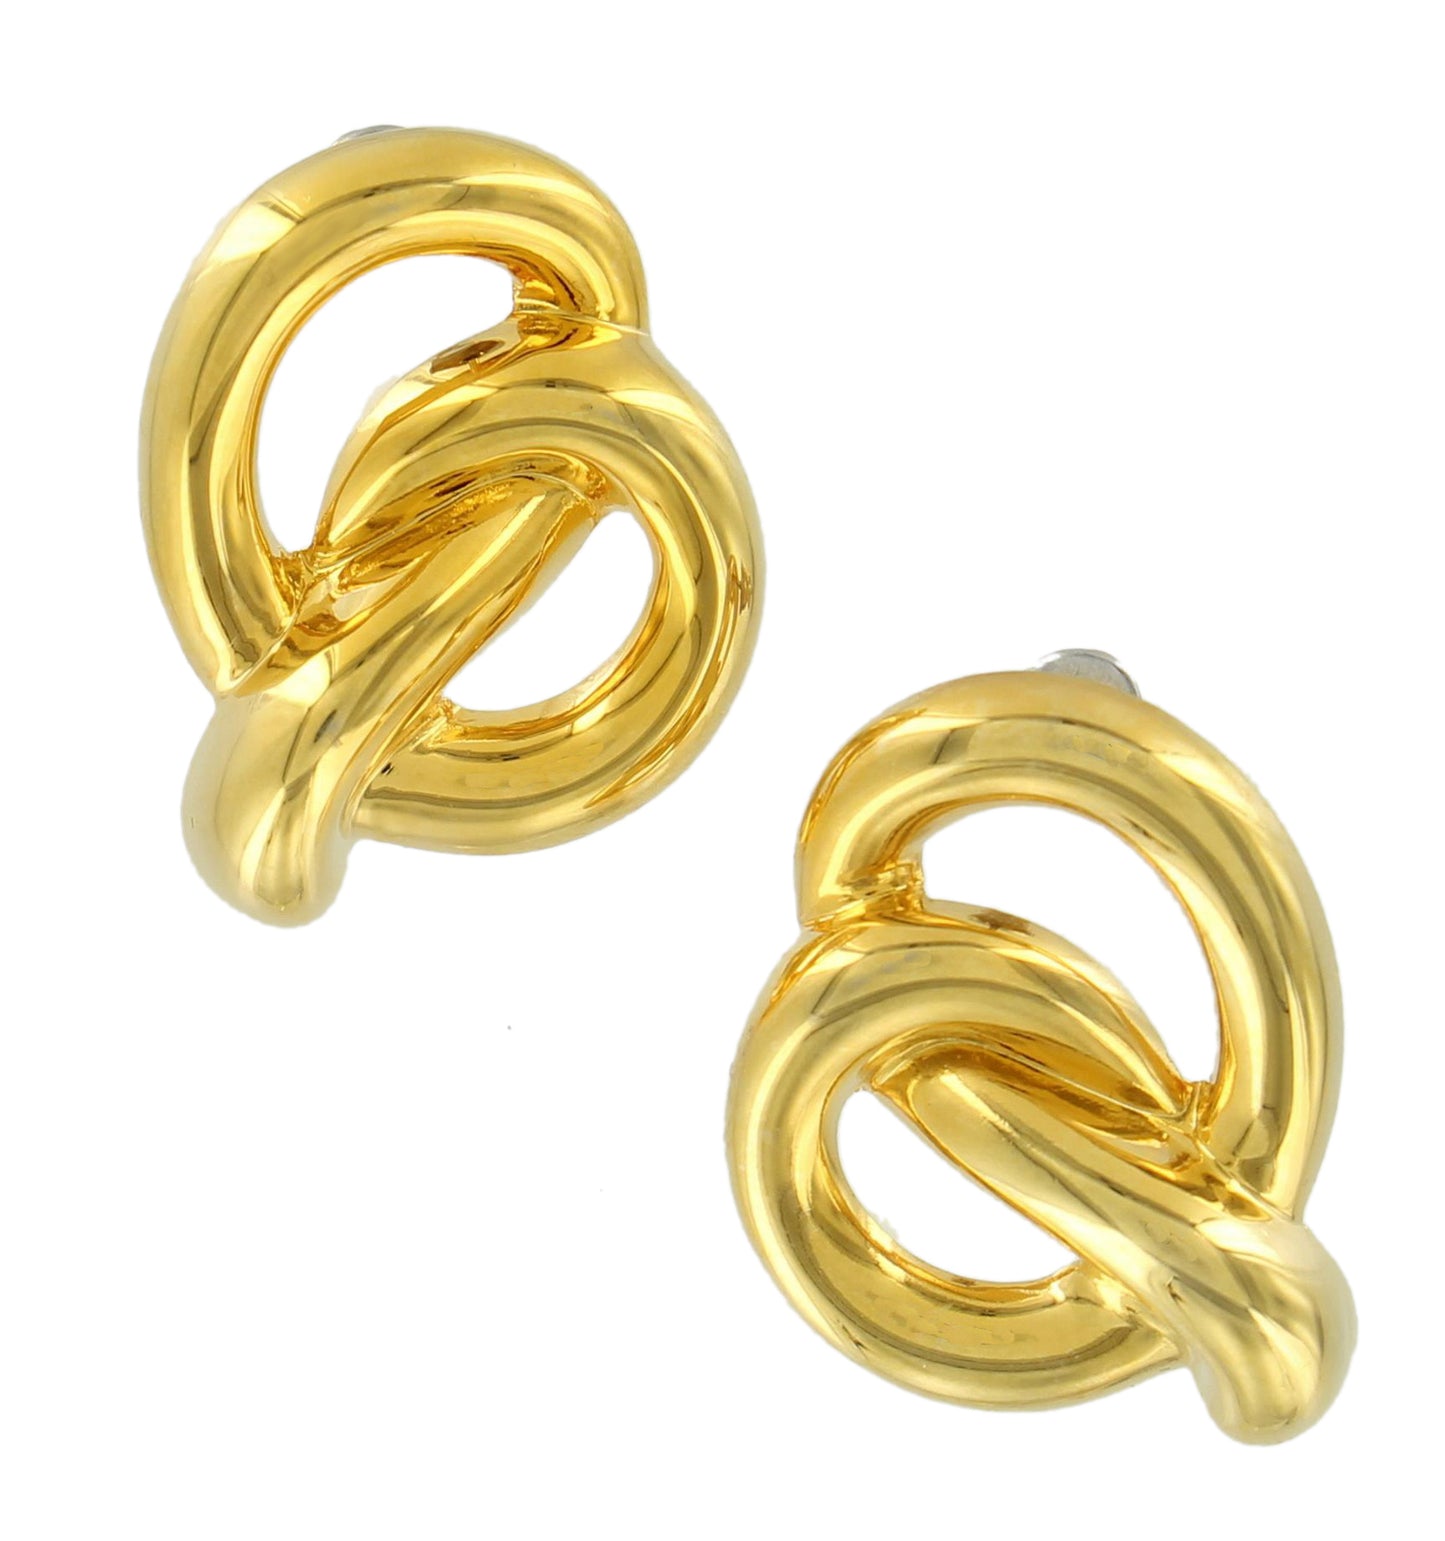 Knotted Pretzel Gold Tone Pierced Earrings 1"